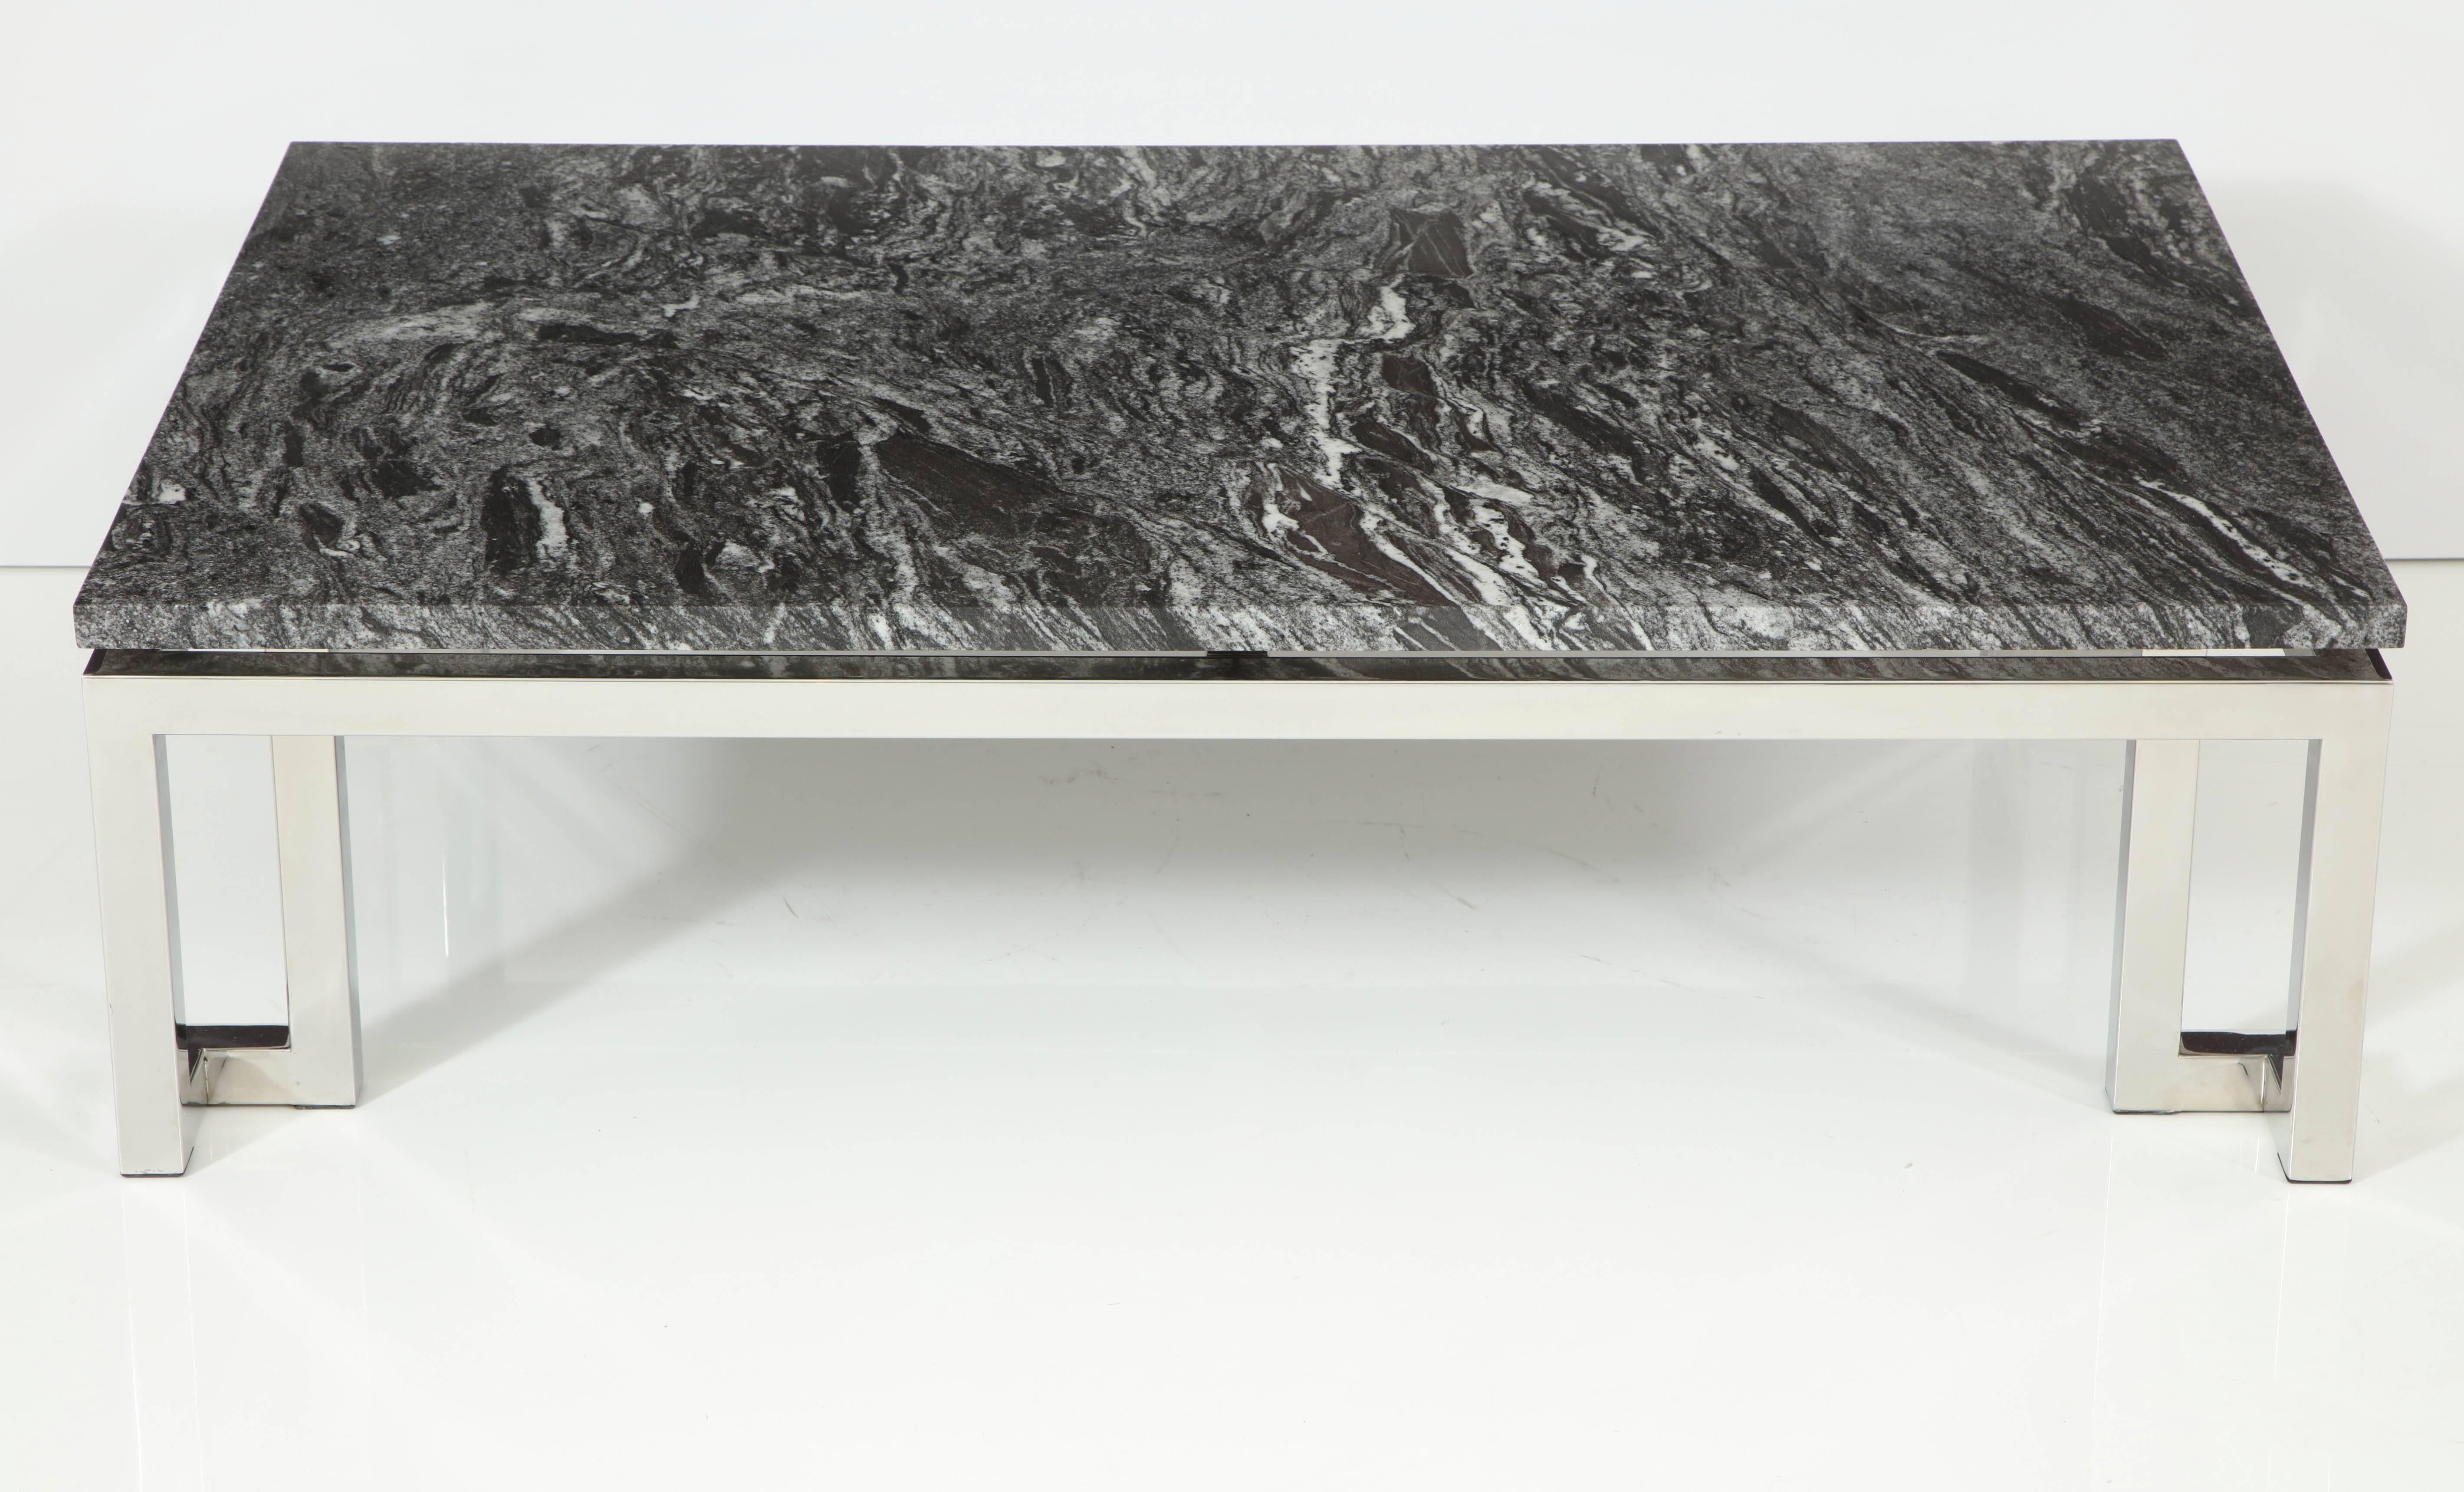 Élégante table basse en chrome poli d'influence grecque. 
Le magnifique plateau en granit flotte au dessus de la base.